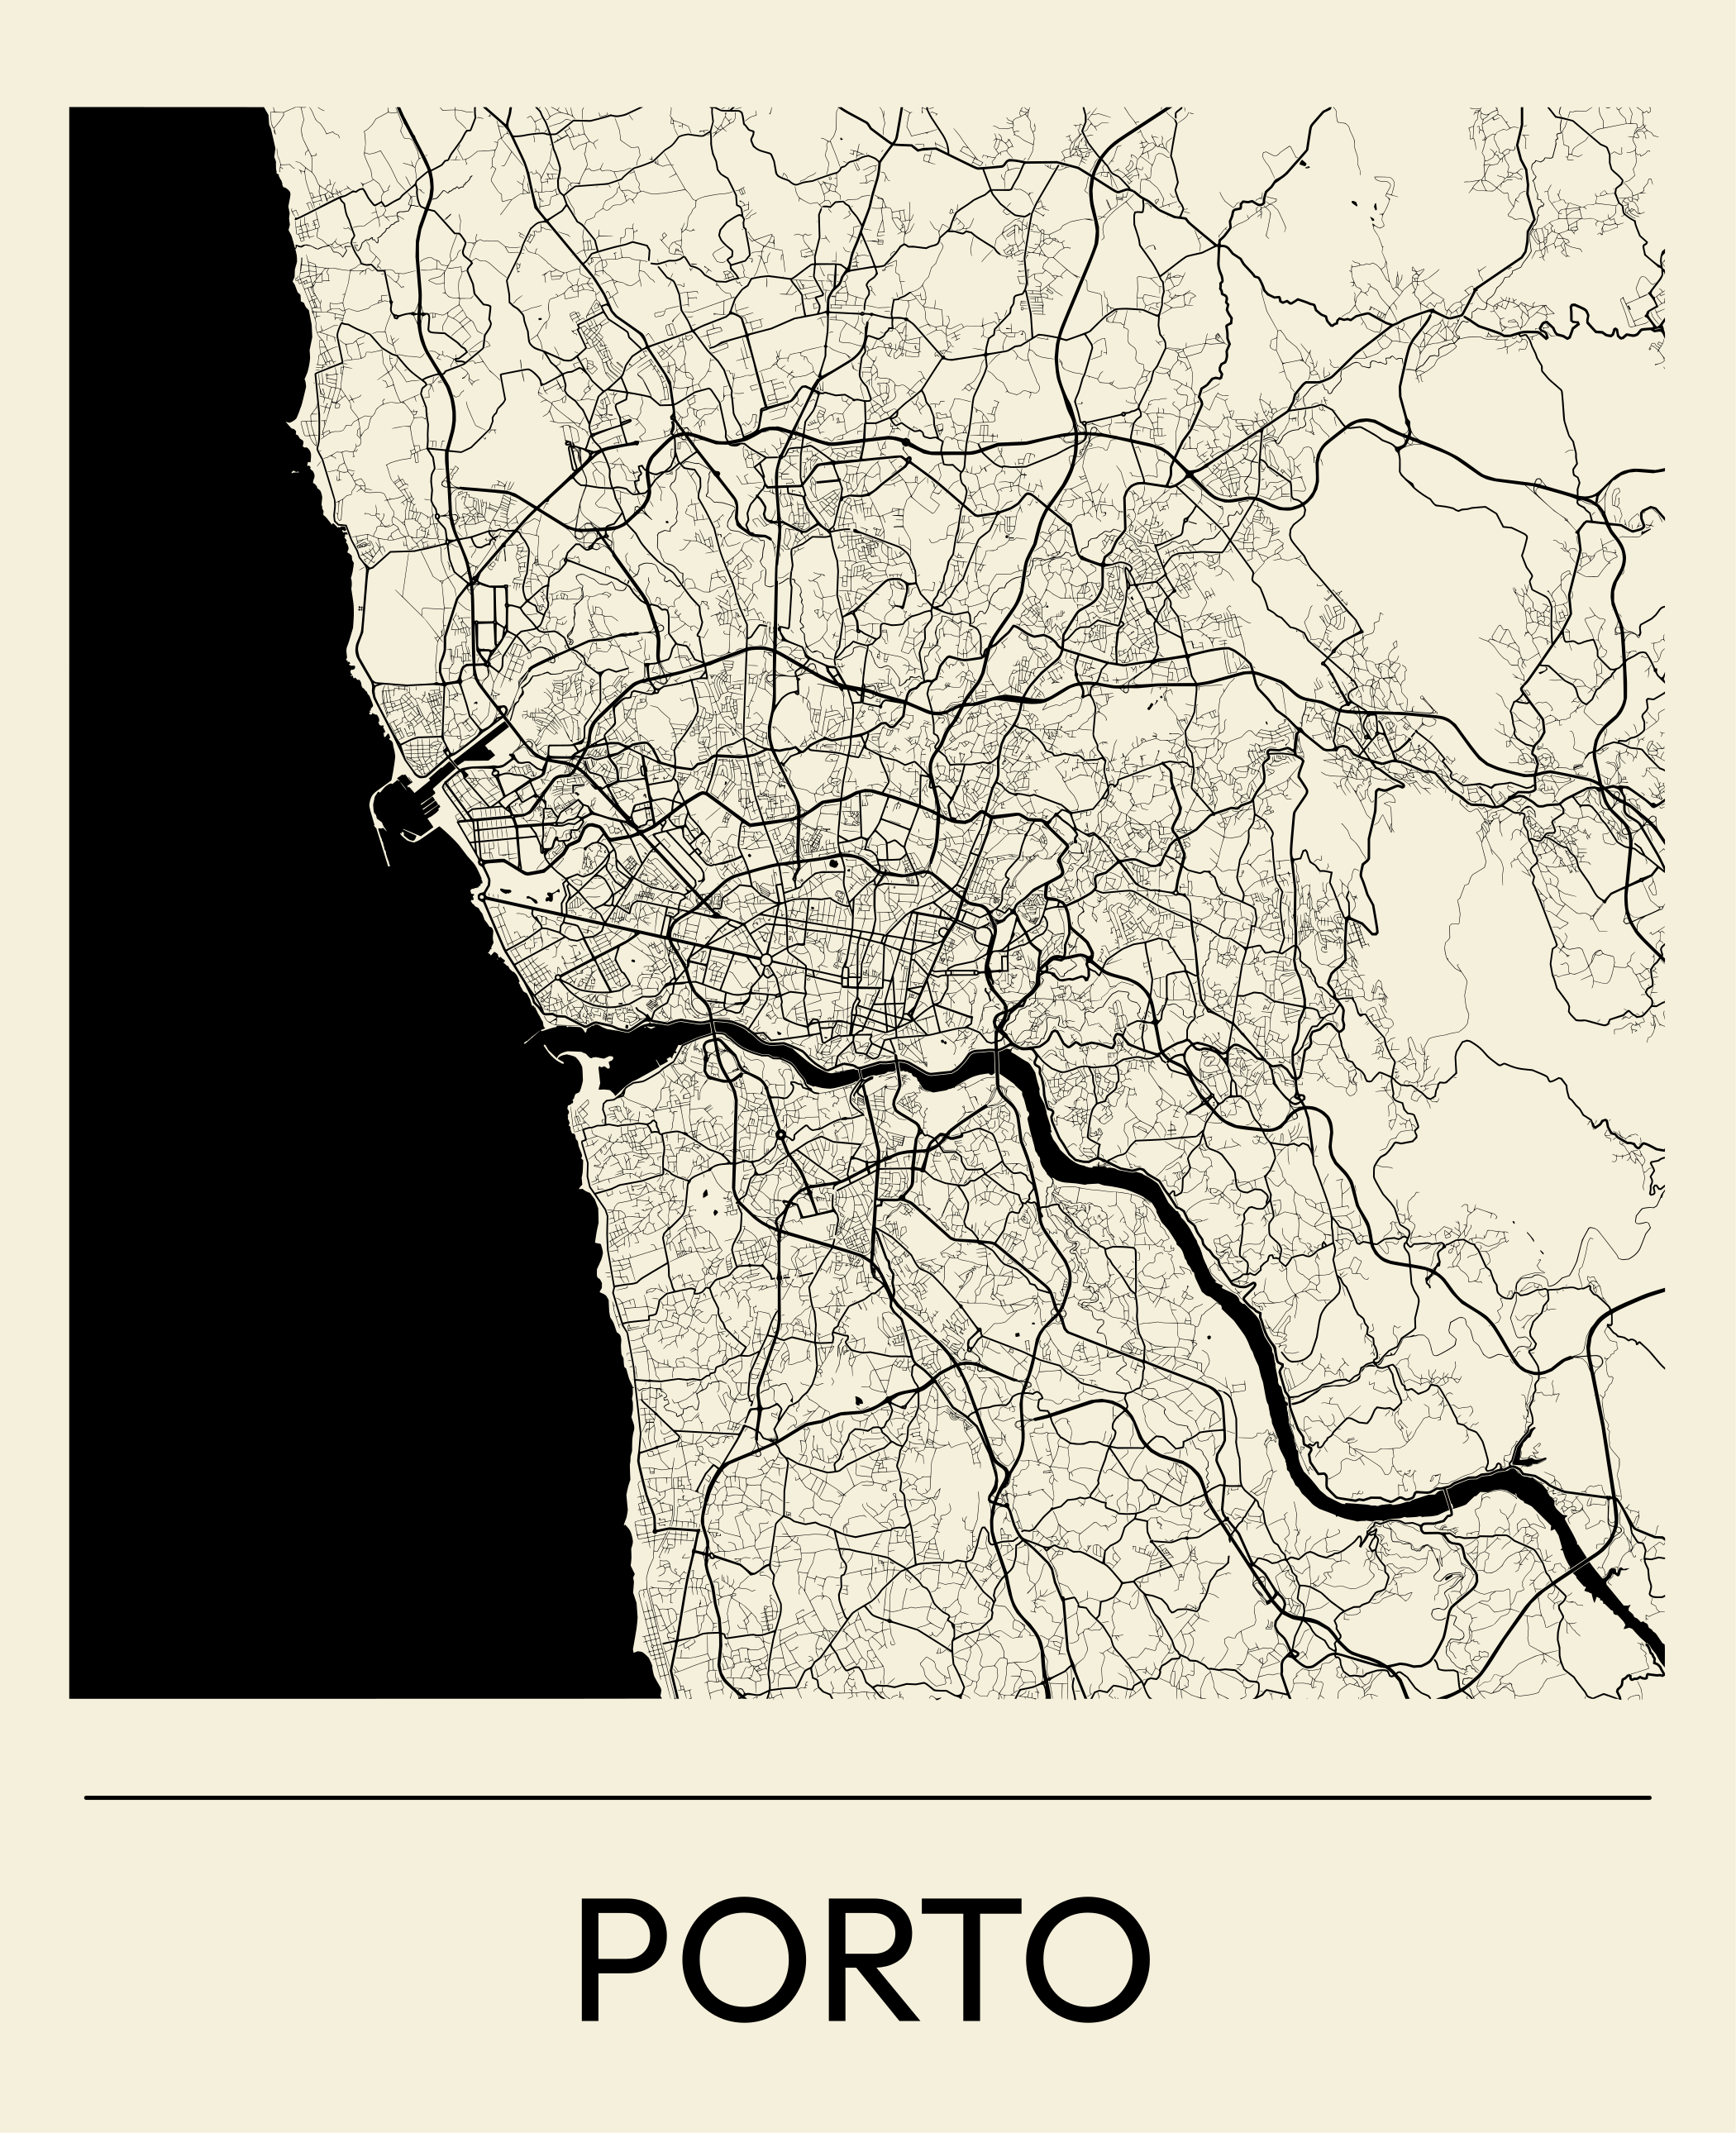 Autocolantes decorativos de cidades e países Mapa de portugal - TenStickers